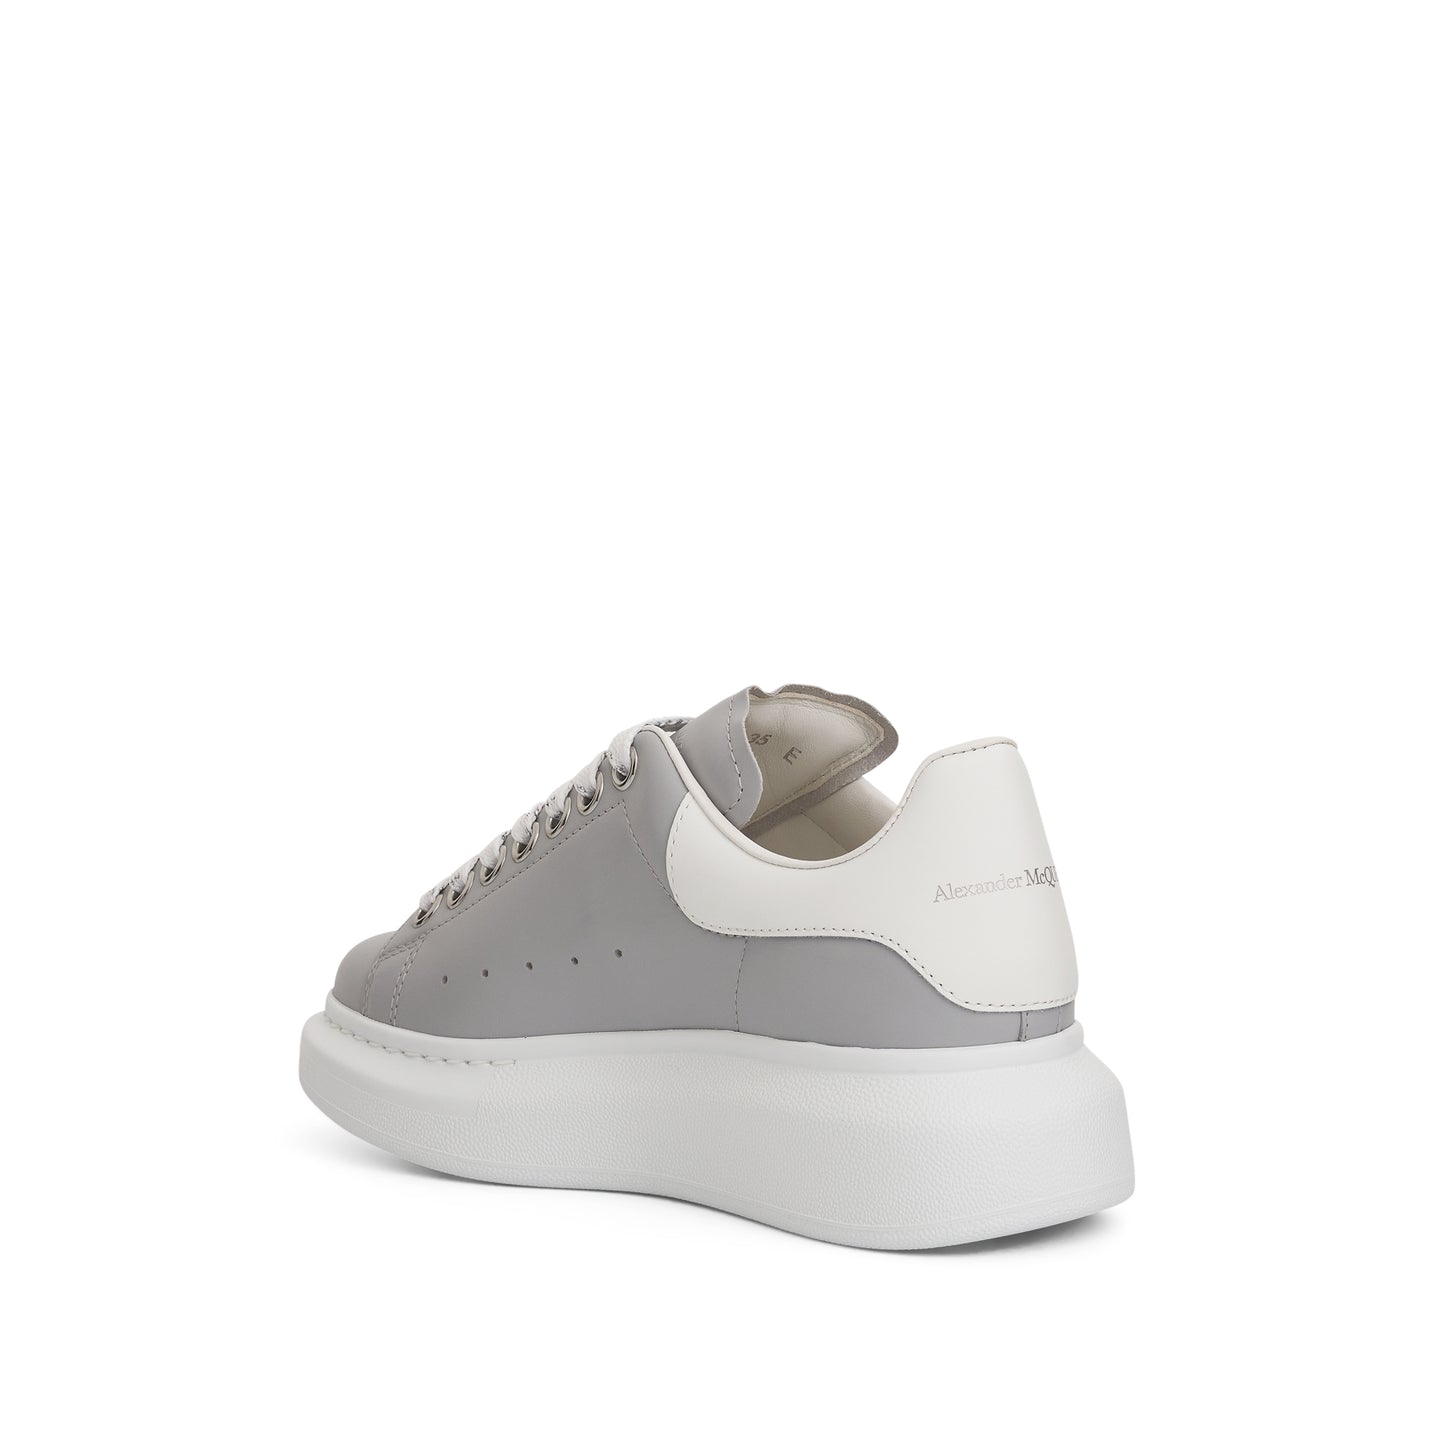 Larry Oversized Sneaker in Silver Grey/White